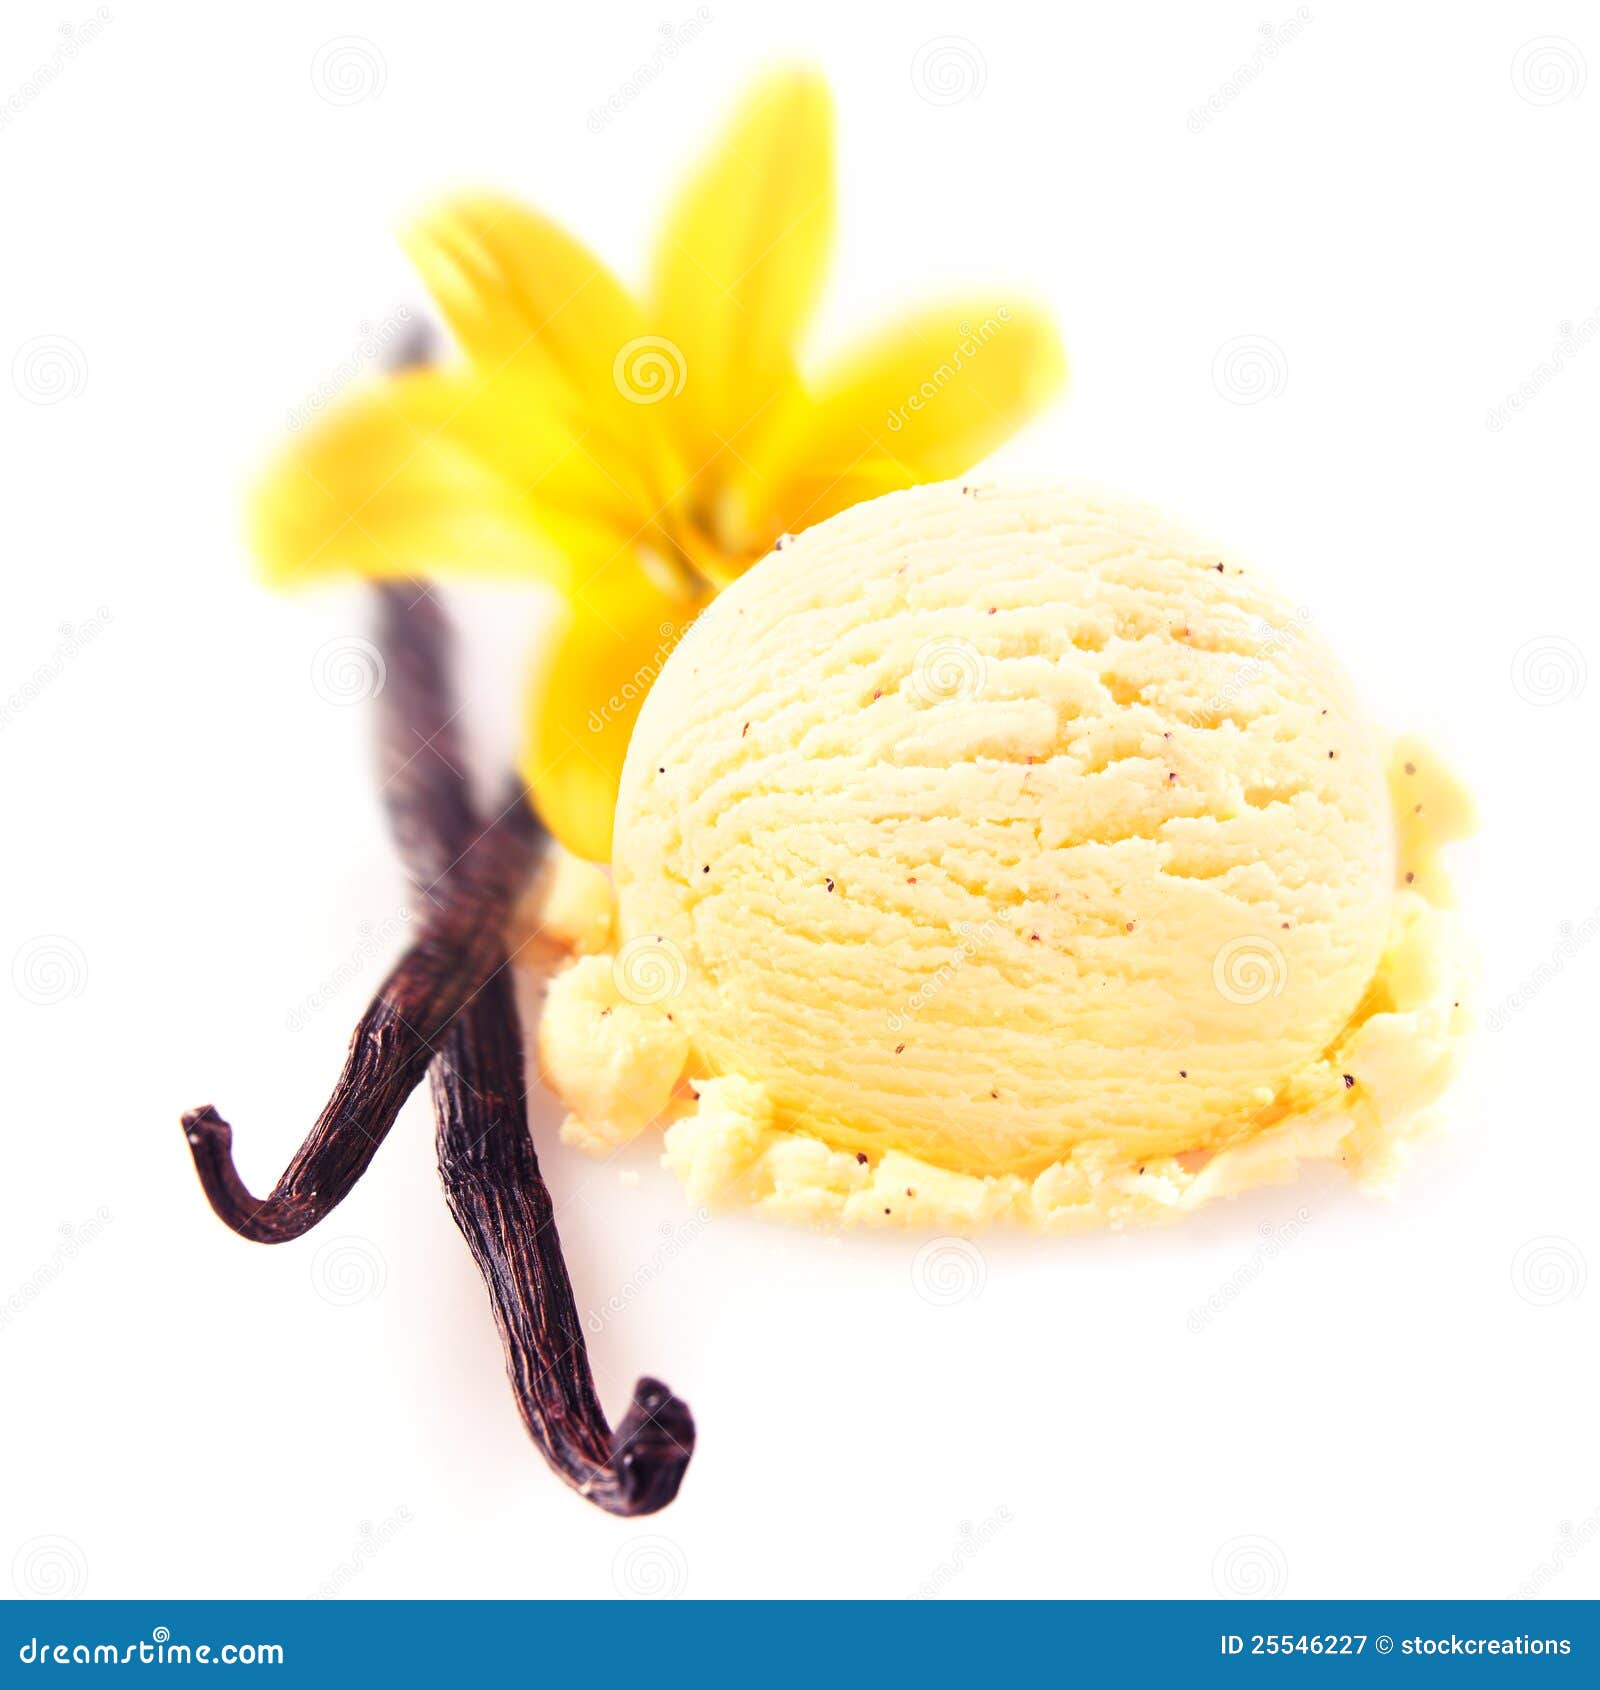 vanilla pods with icecream